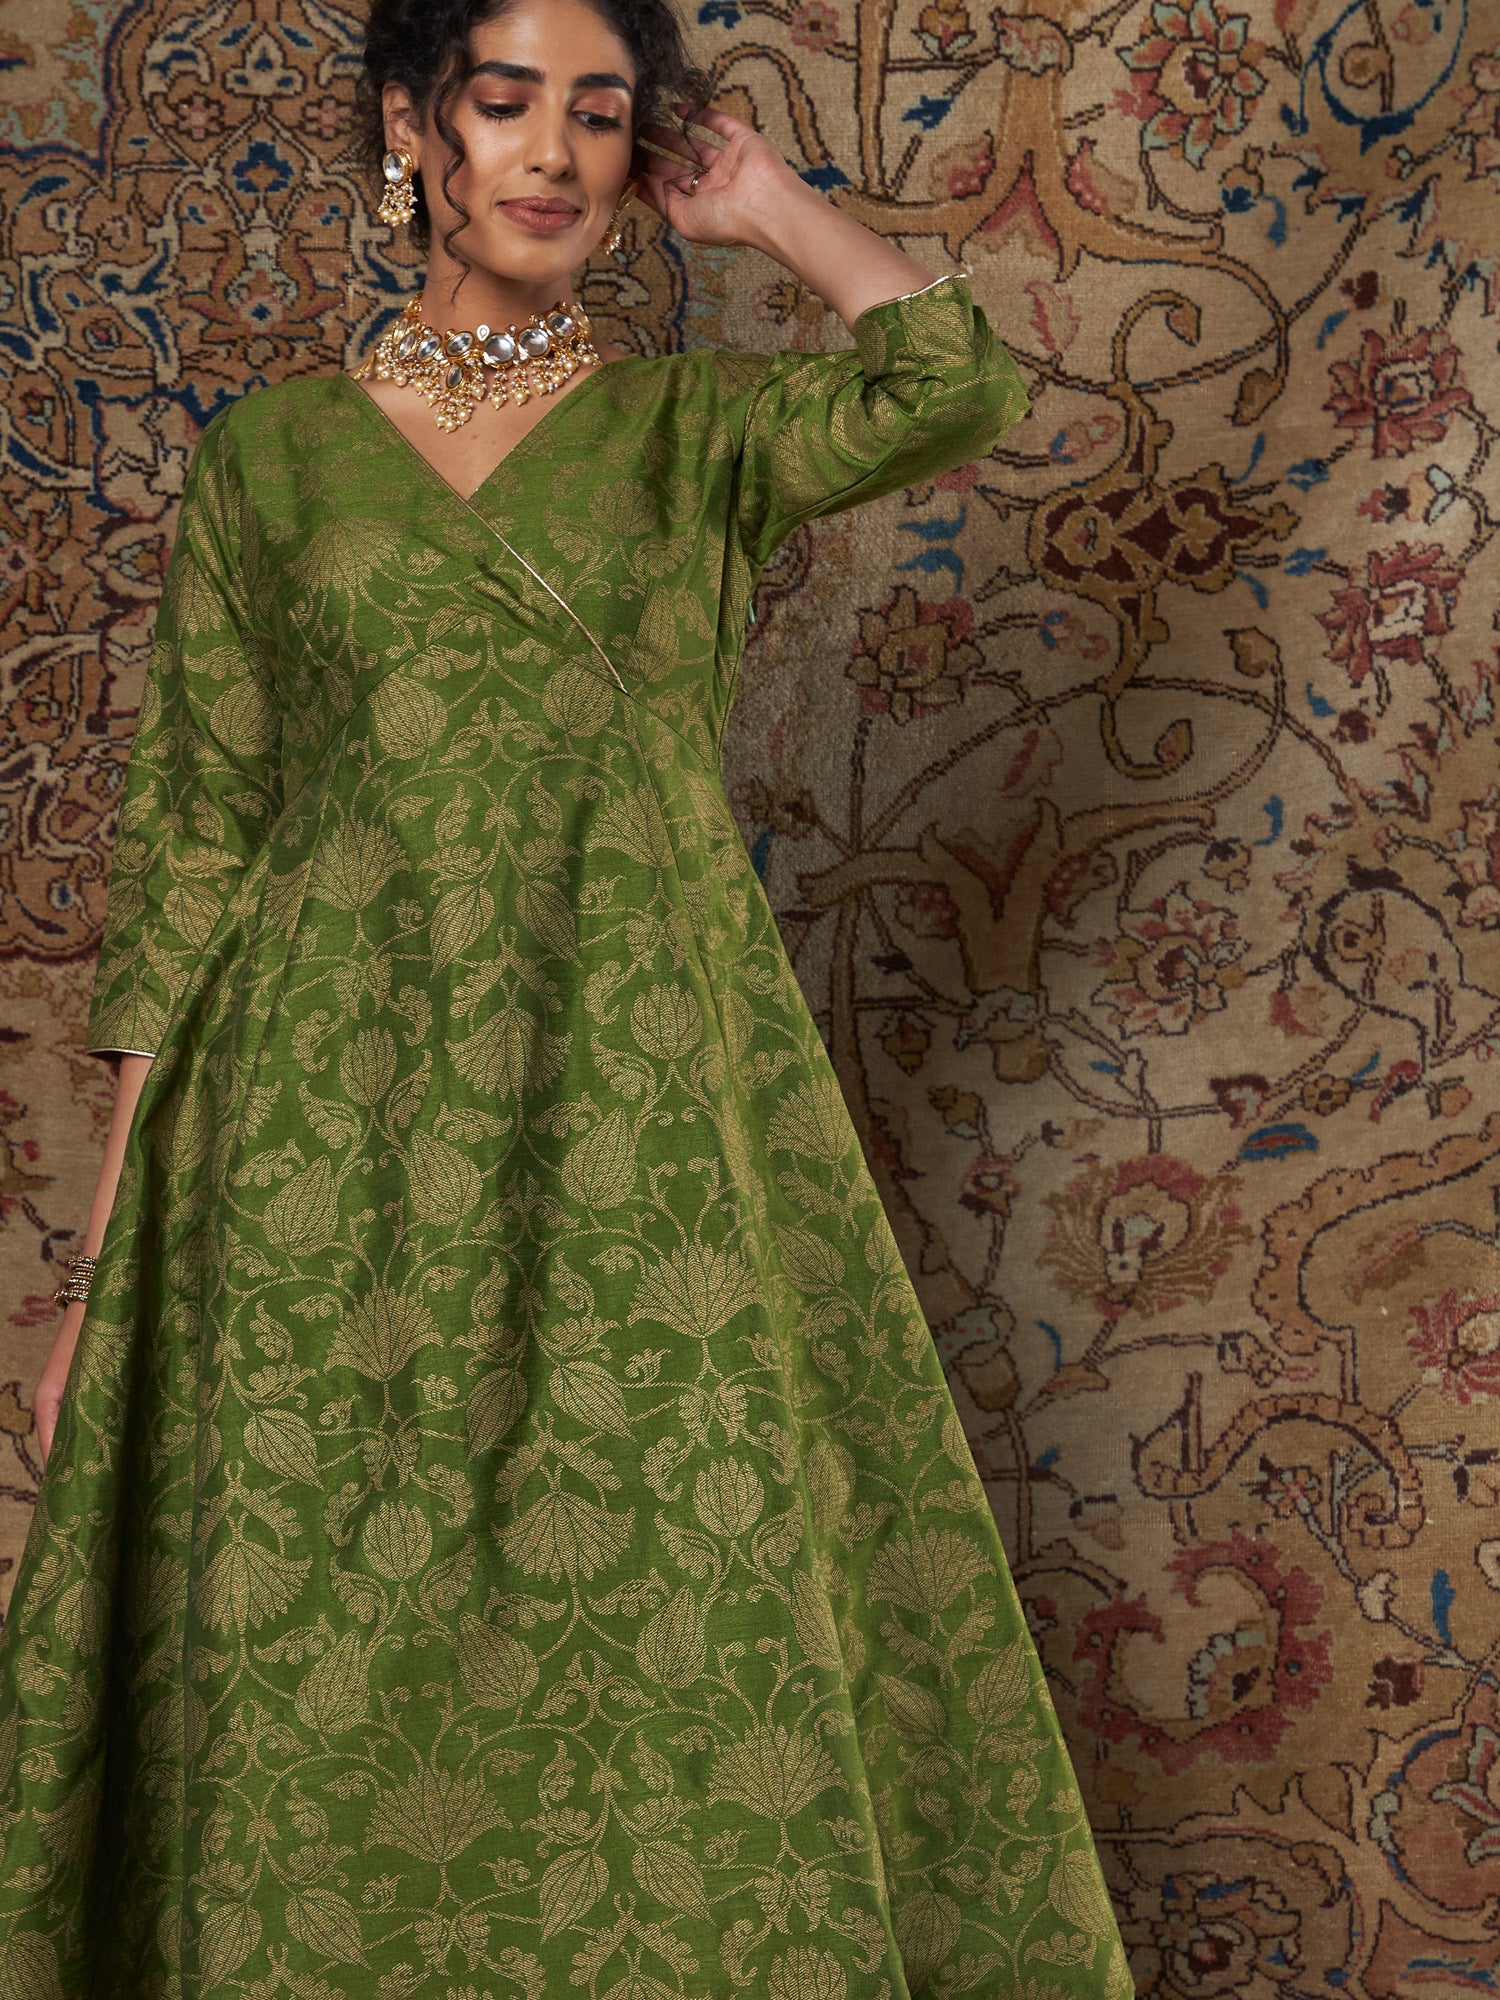 Women Green Brocade Floral Anarkali Dress